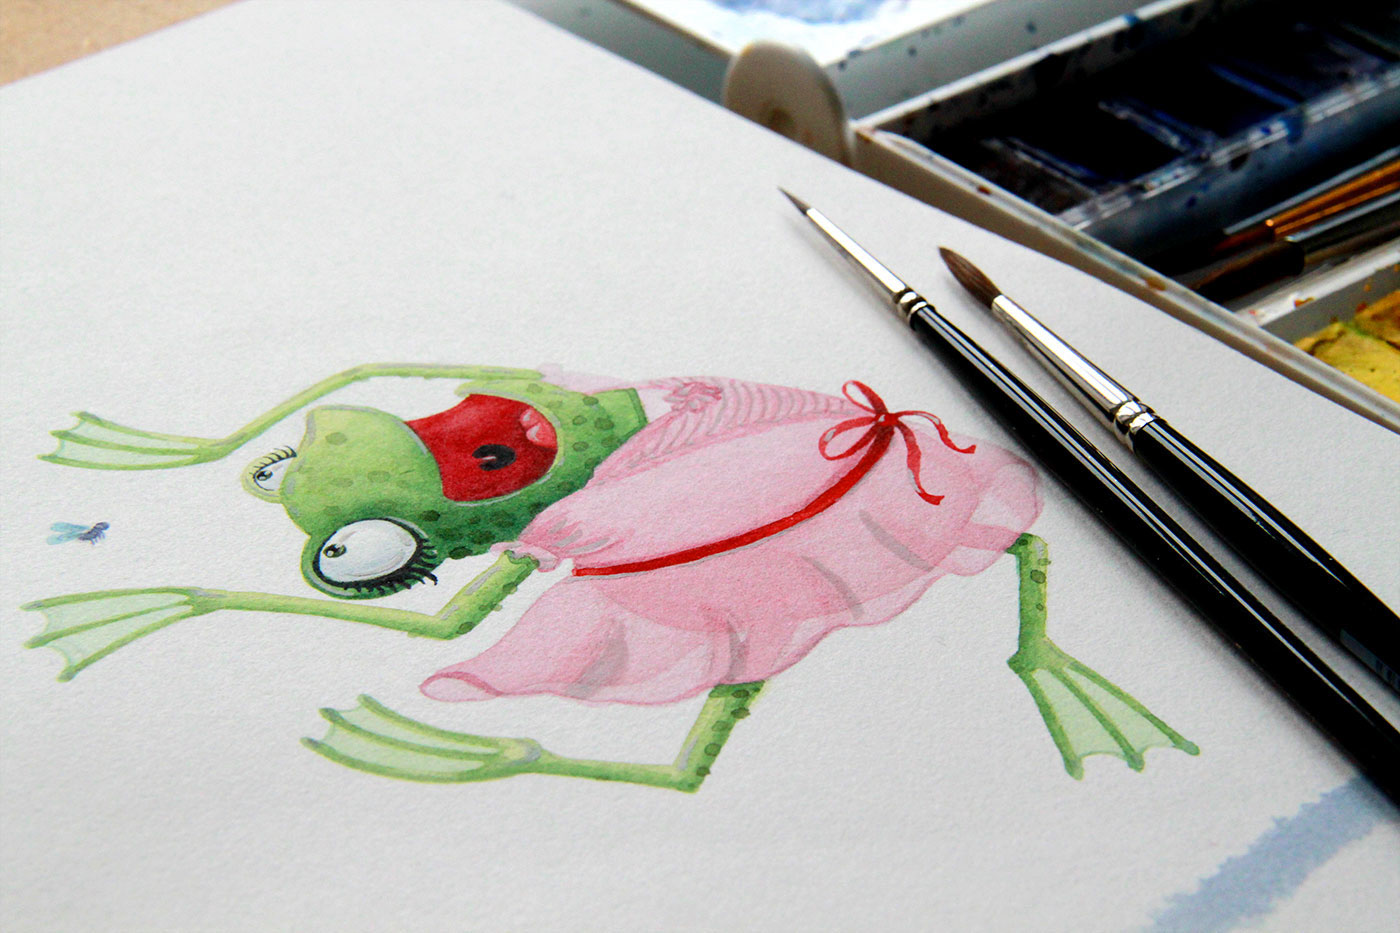 Character characterdesign watercolor artctopus neonmob lettering handwritten handdrawing animals